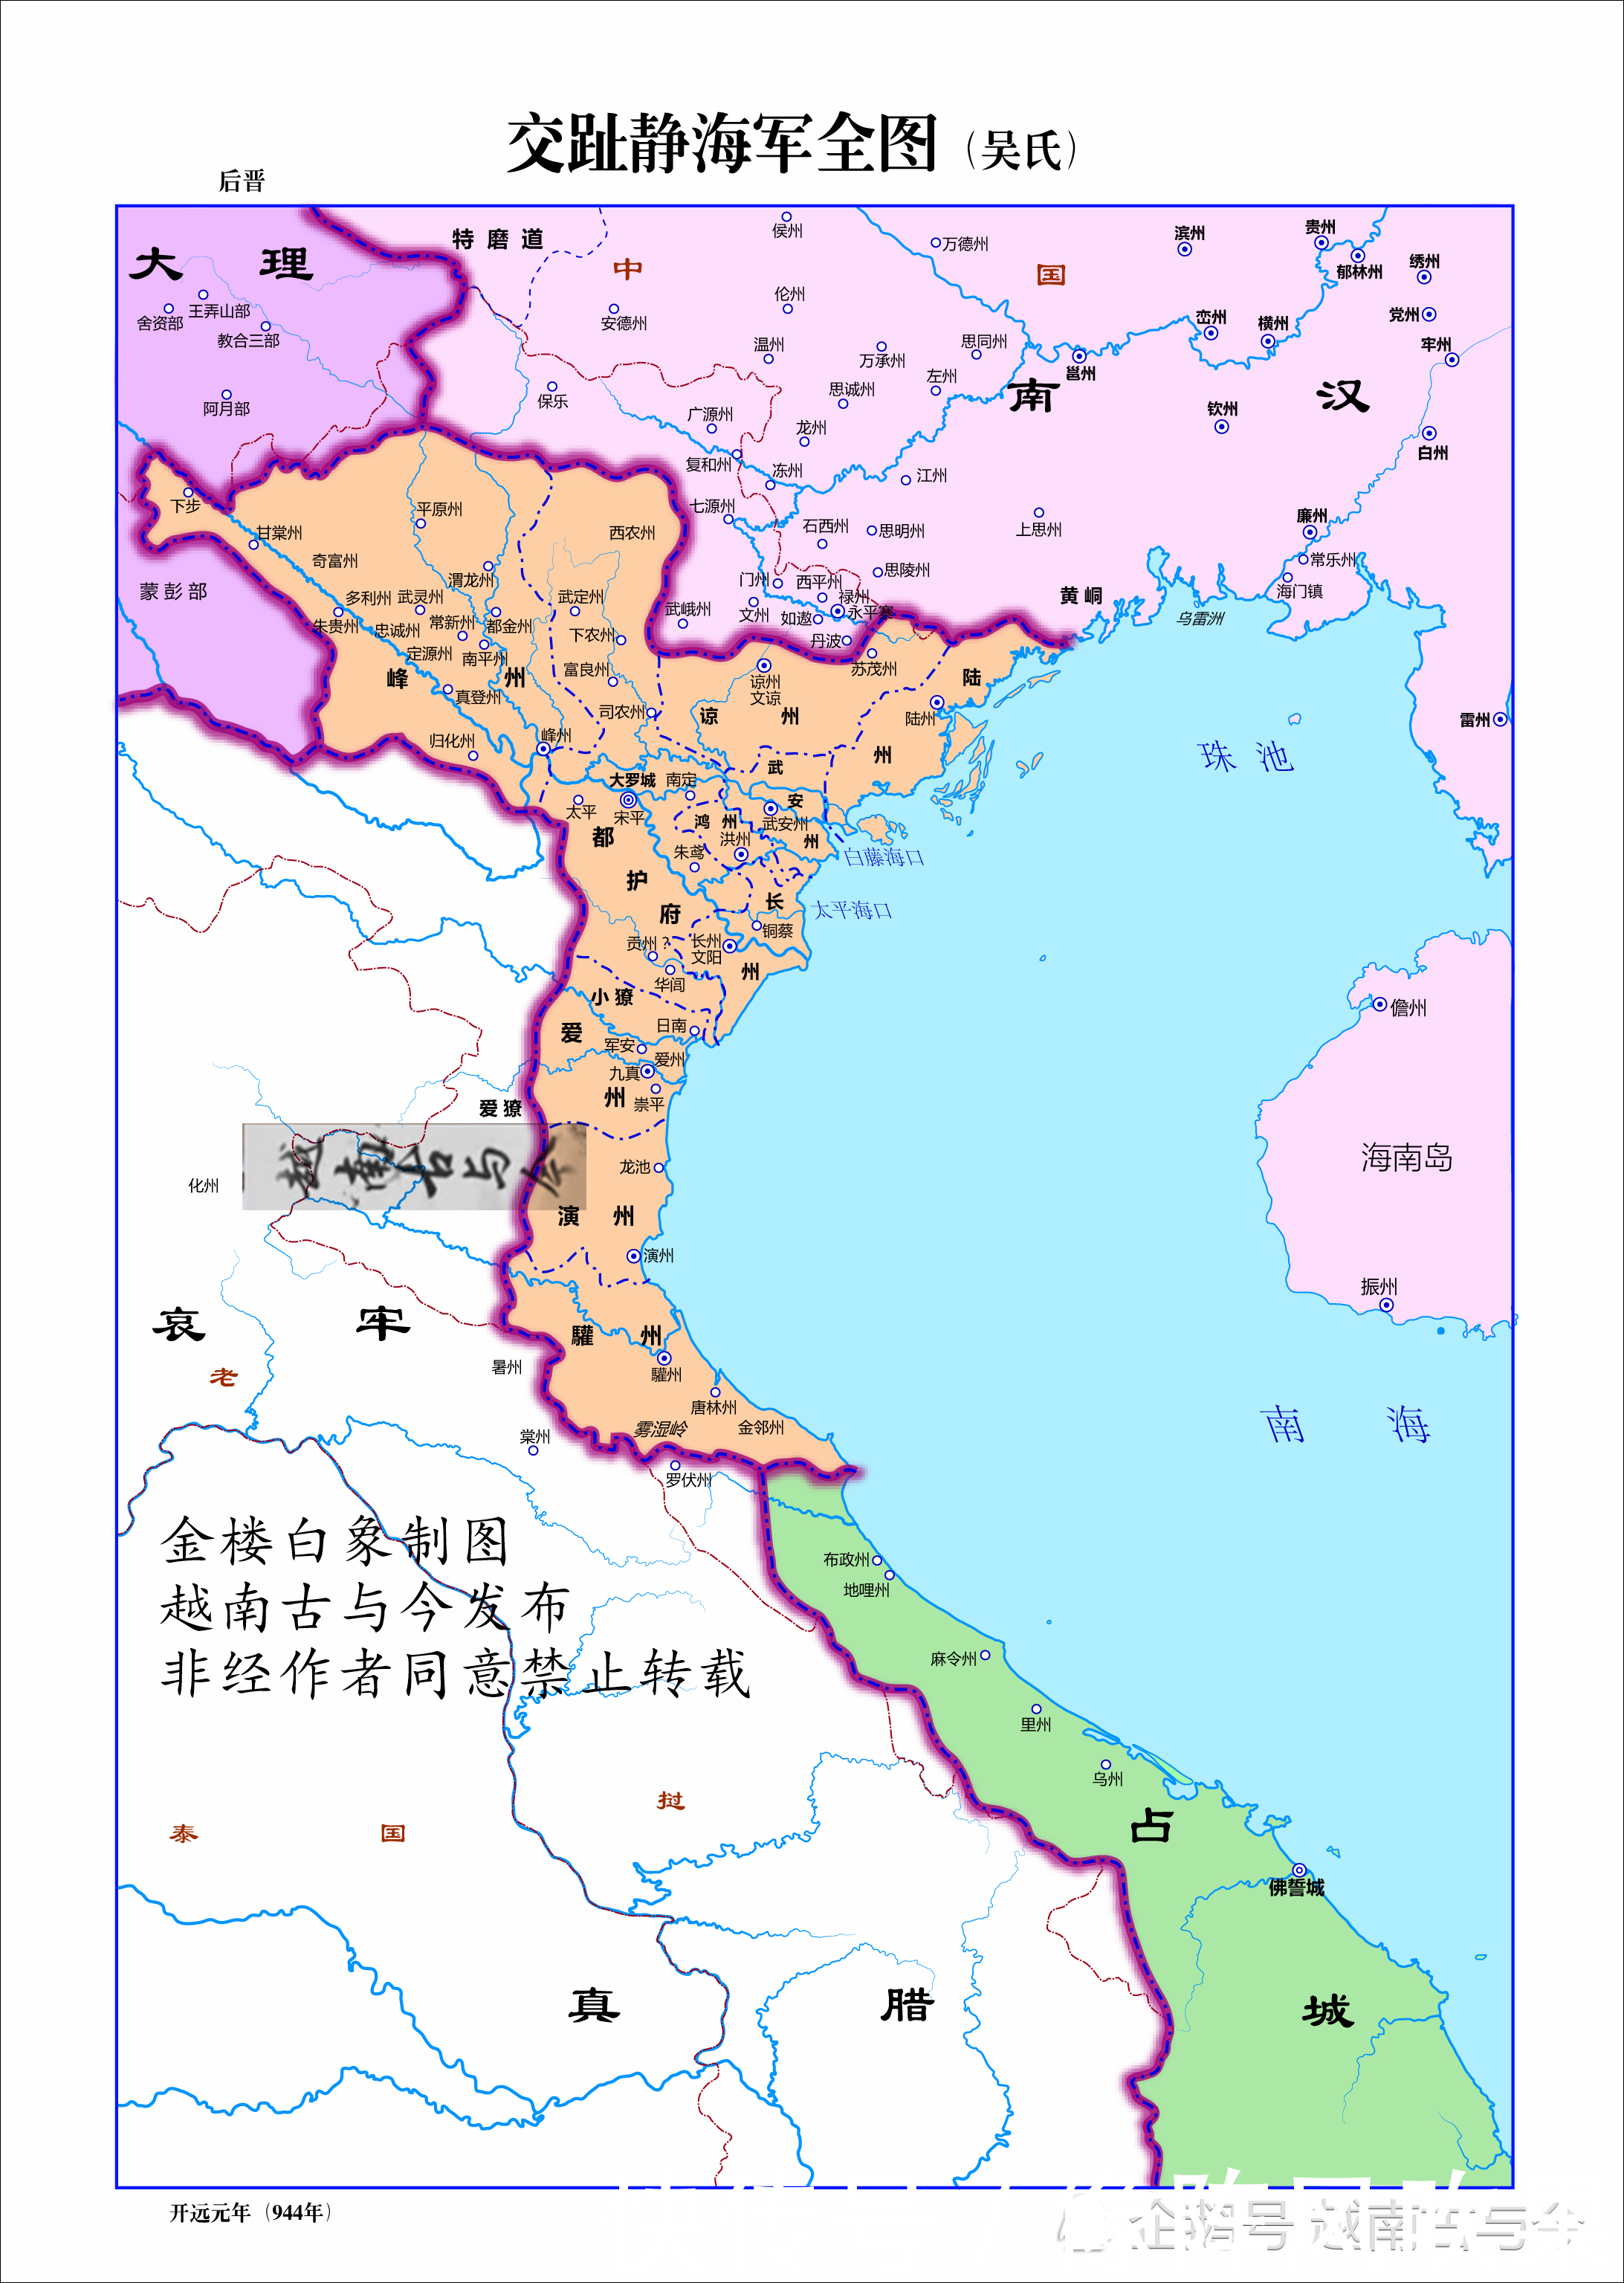 越南一千年历史地图演变,一步步南进成为东南